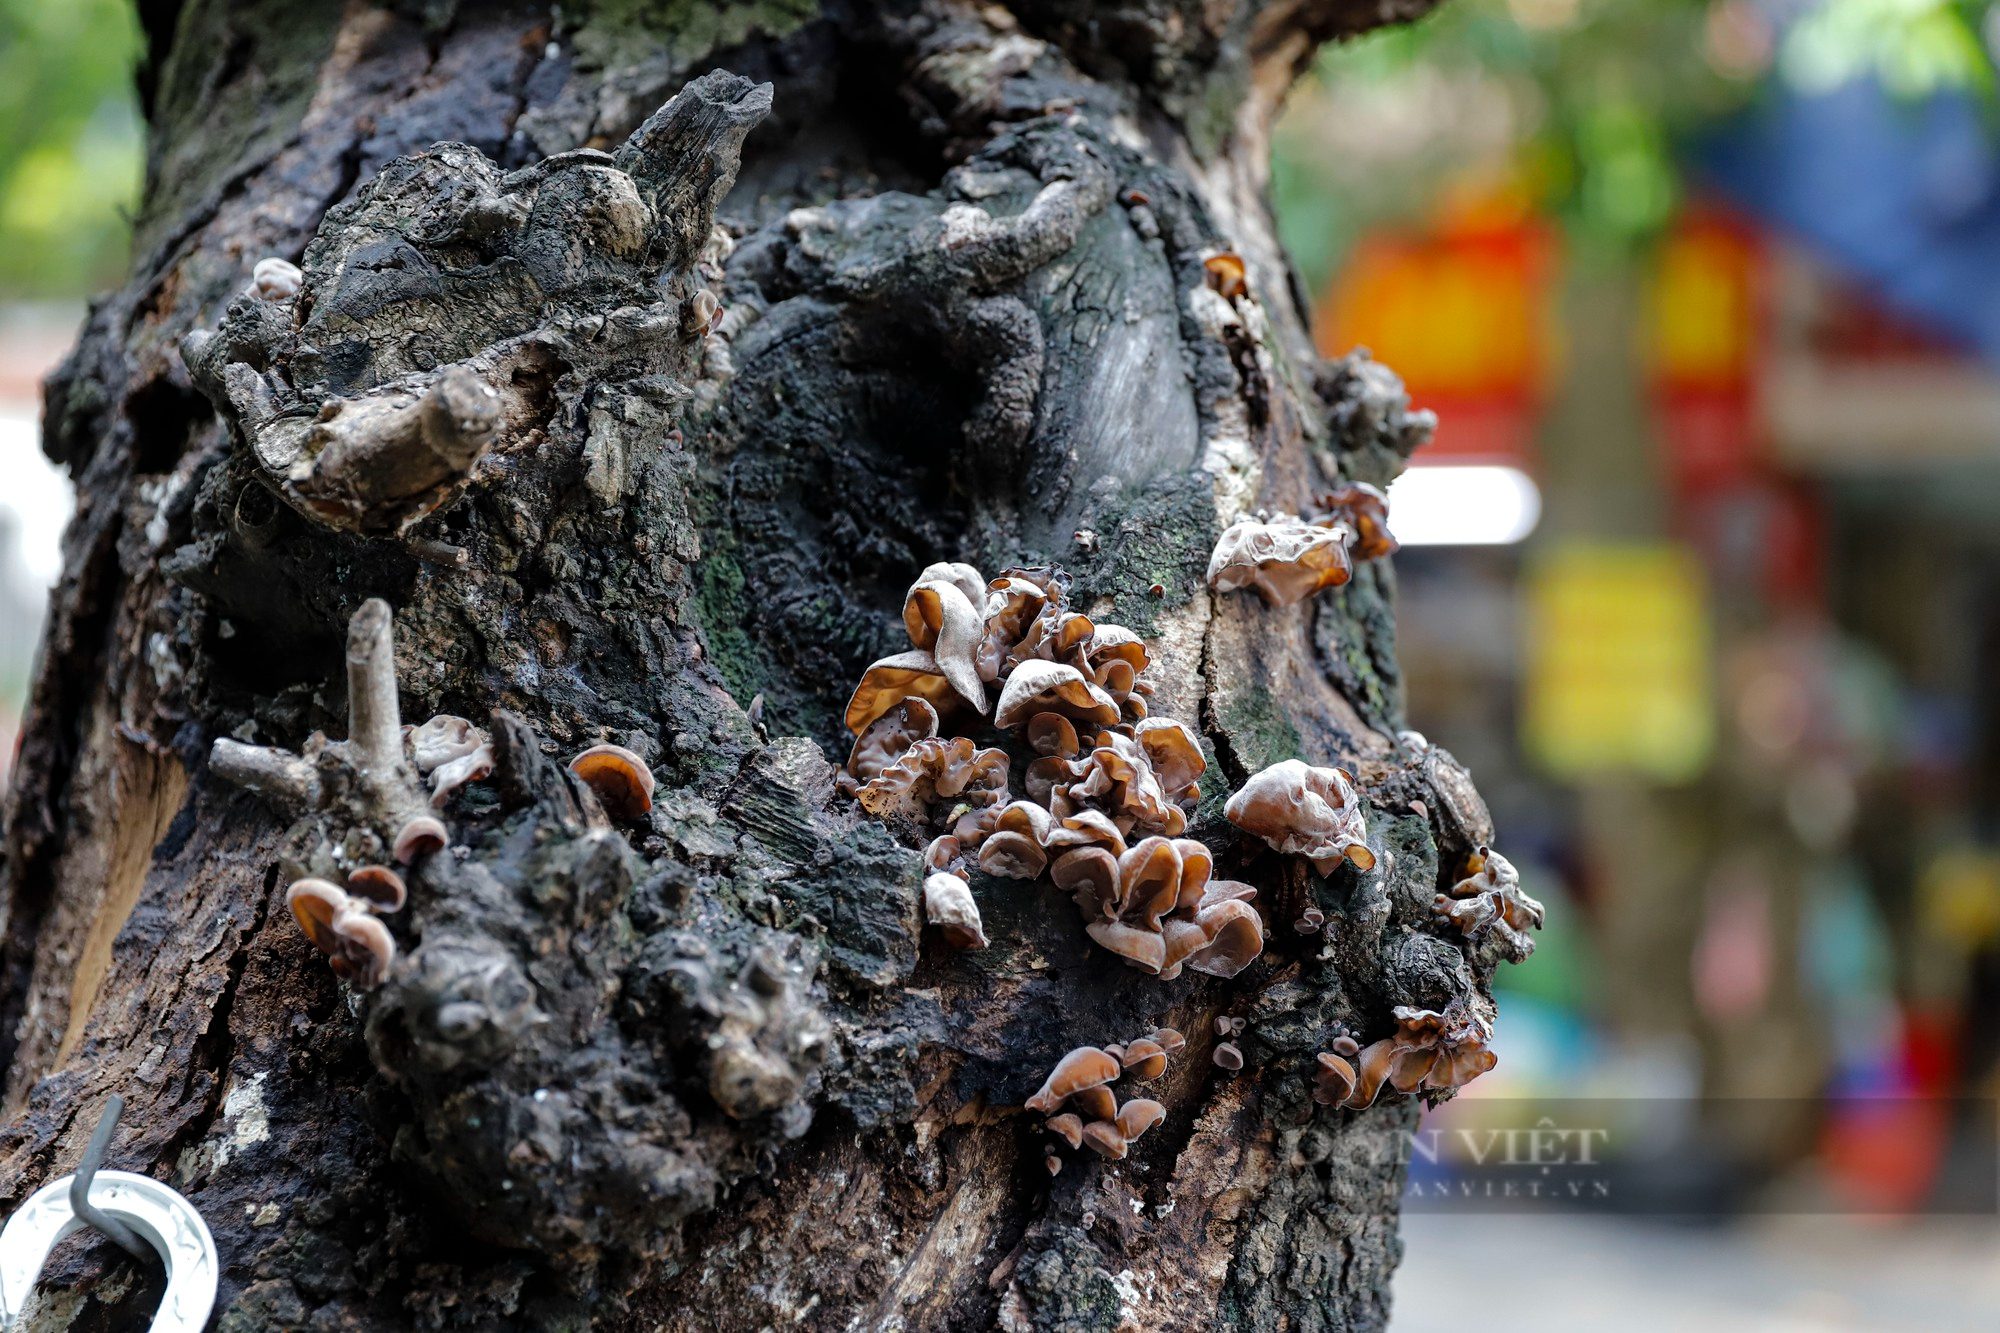 Nhiều cây cổ thụ chết khô trên các tuyến phố Hà Nội, nguy cơ đổ khi giông bão - Ảnh 8.